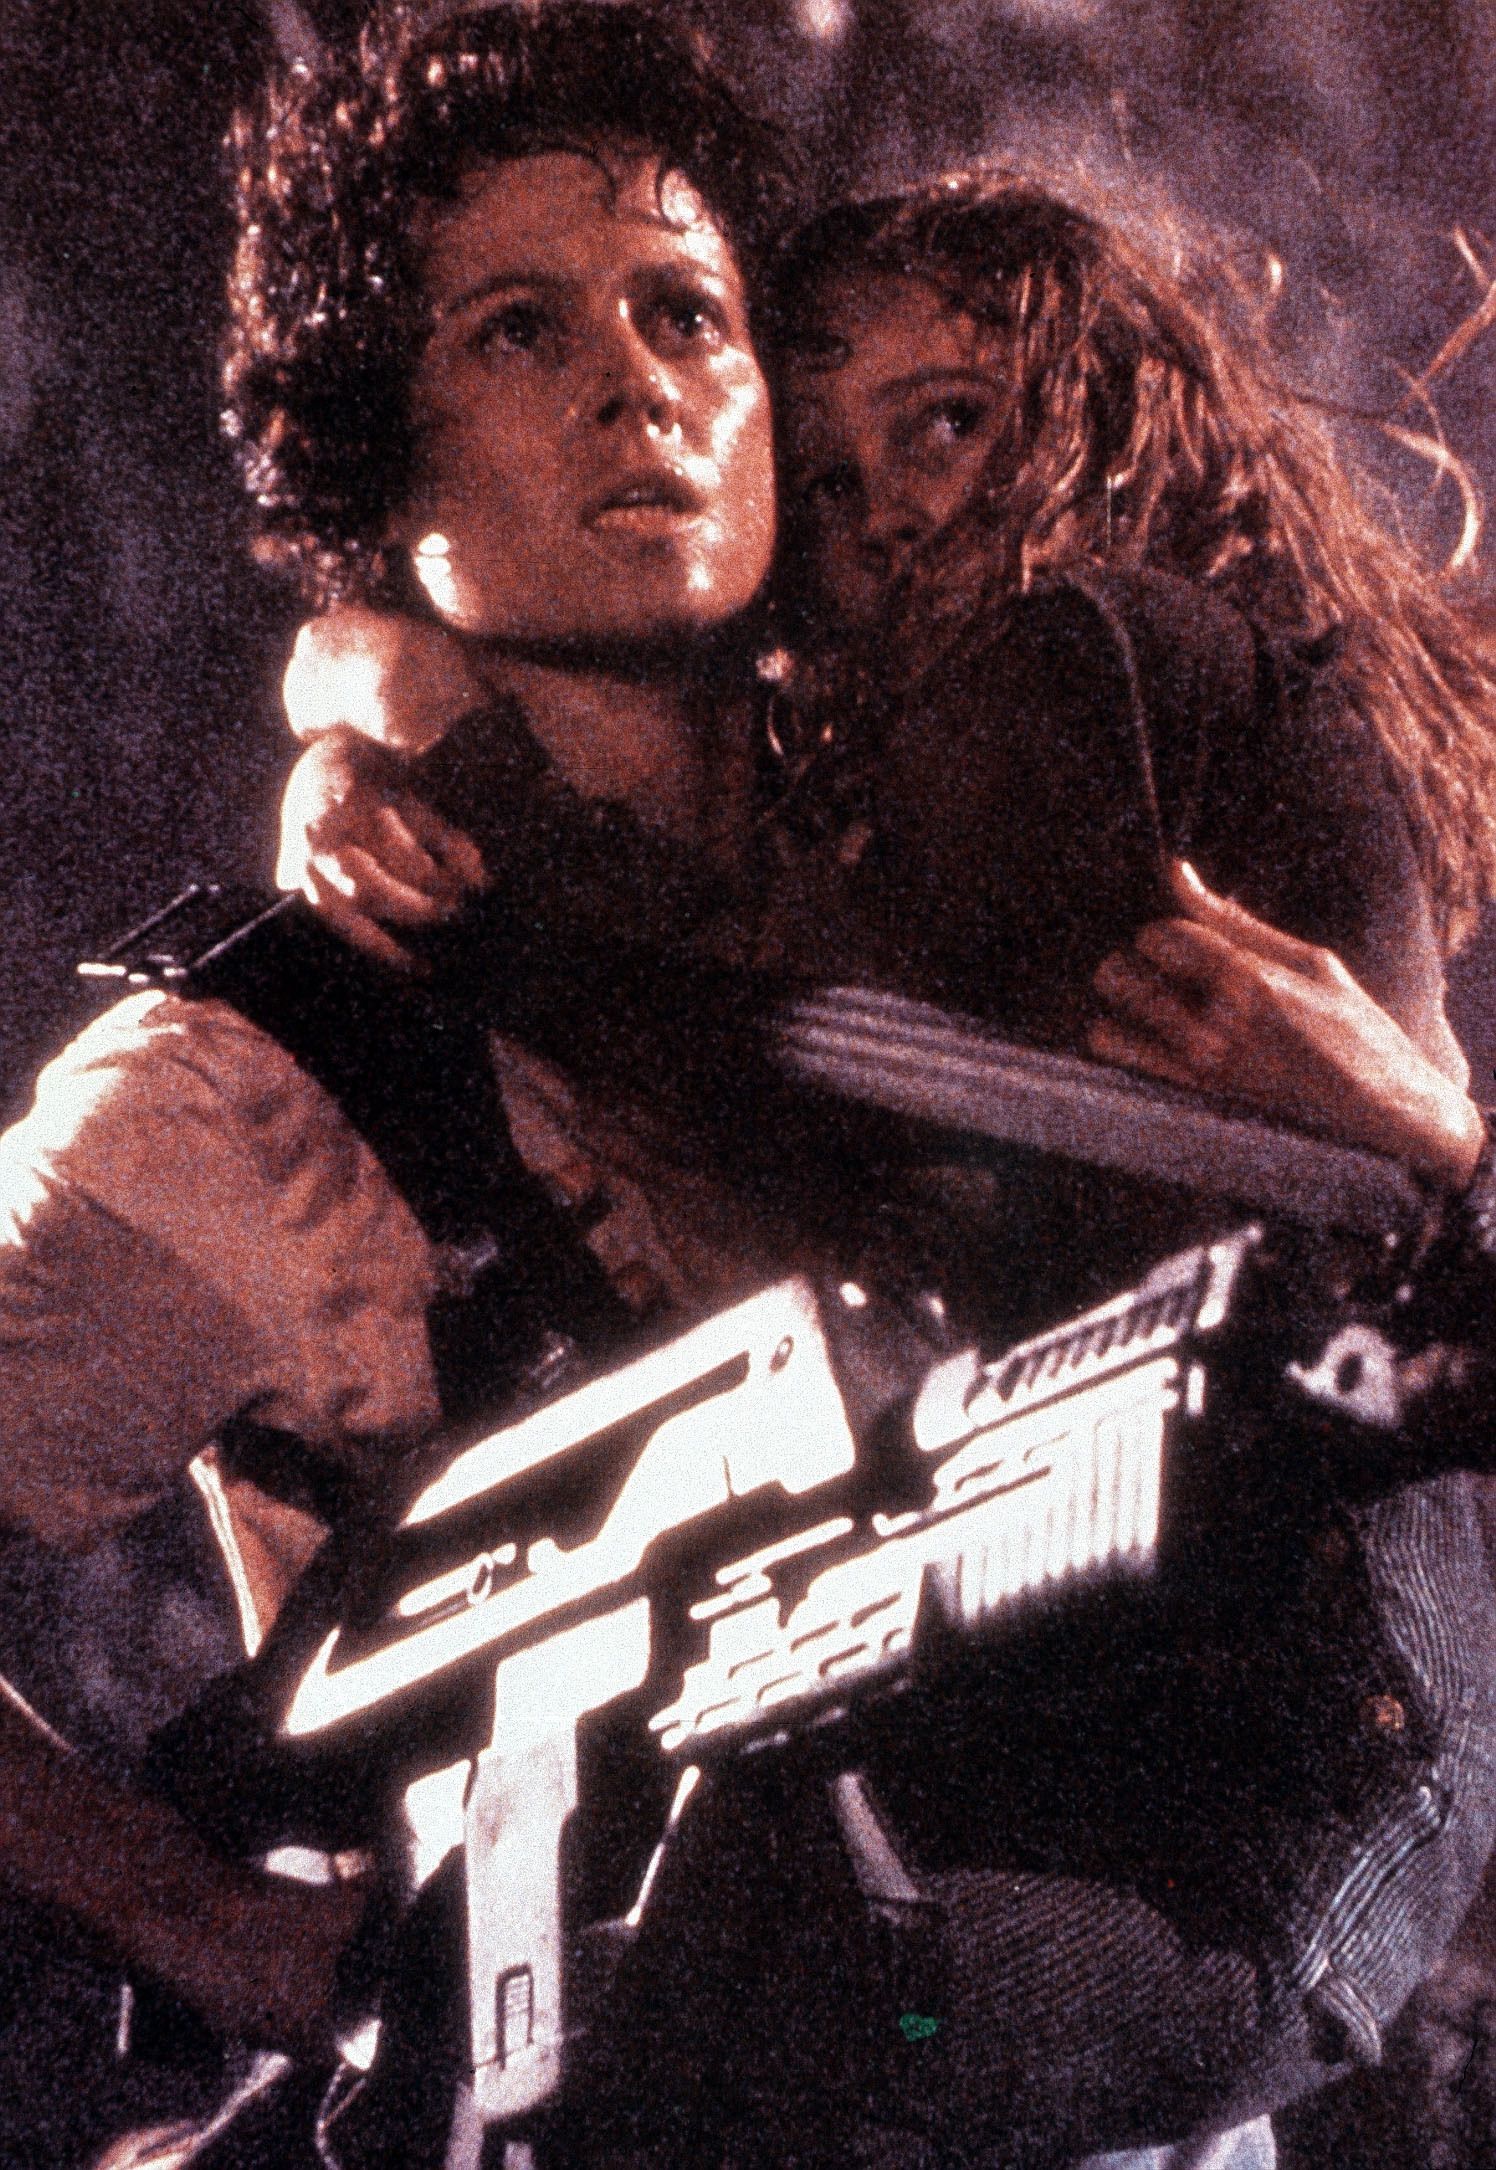 Sie gilt gemeinhin als erste Action-Heldin der Filmgeschichte: Denn während alle anderen in den "Alien"-Filmen (1979-1997) von den außerirdischen Tötungsmaschinen gemeuchelt werden, entkommt sie den Biestern immer in letzter Sekunde, indem sie ihren Verstand benutzt und hin und wieder zum Flammenwerfer greift. Für diese früher doch eher untypische Rolle wurde Sigourney Weaver 1987 völlig zu Recht für den Oscar nominiert.

